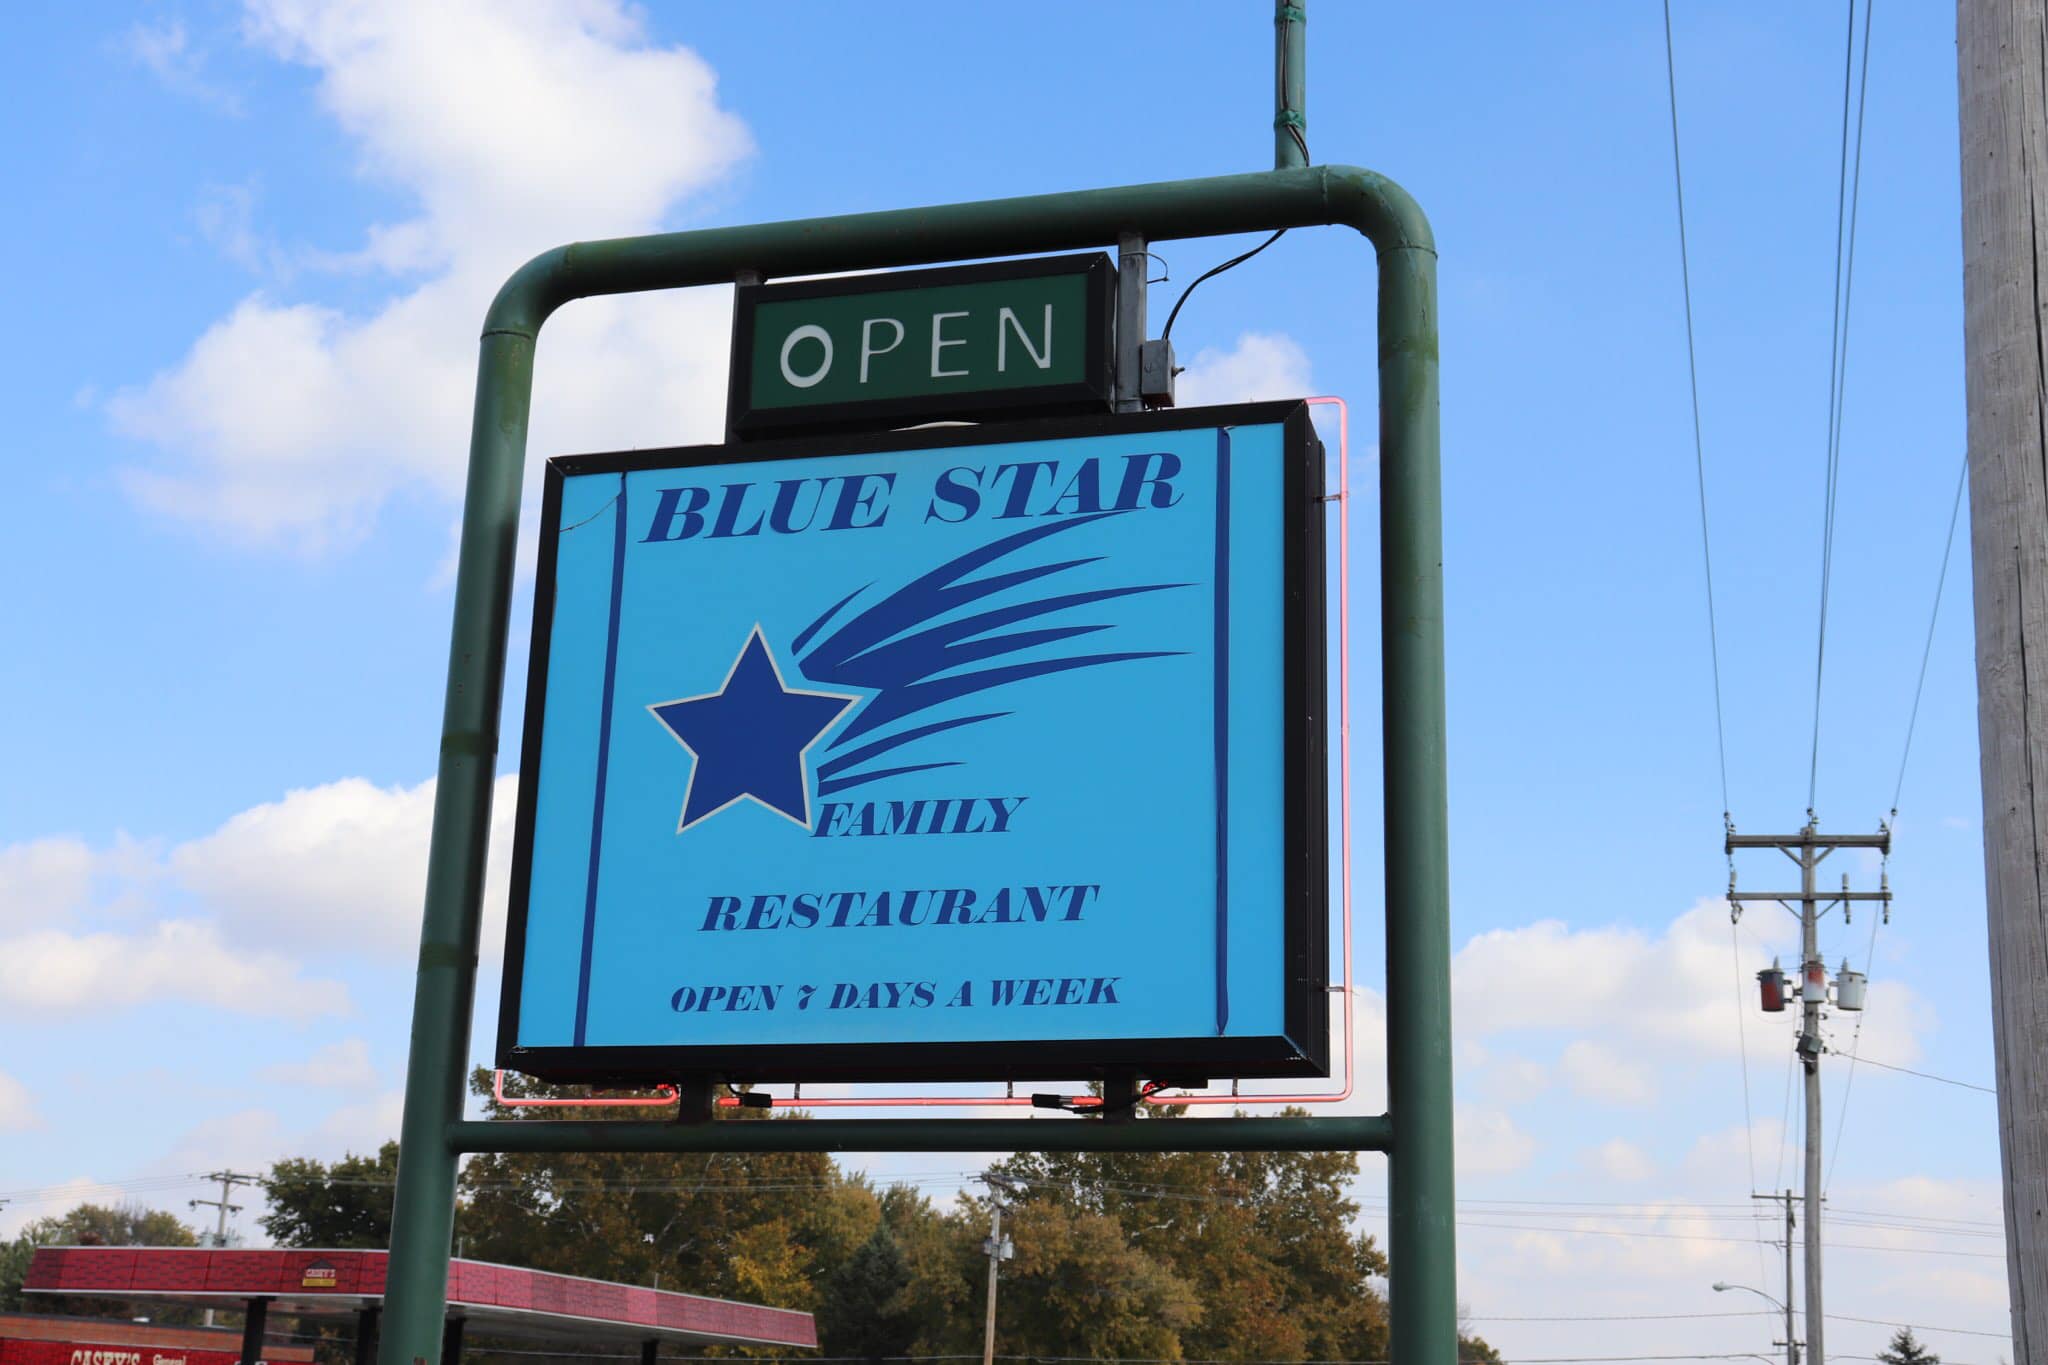 Blue Star Family Restaurant